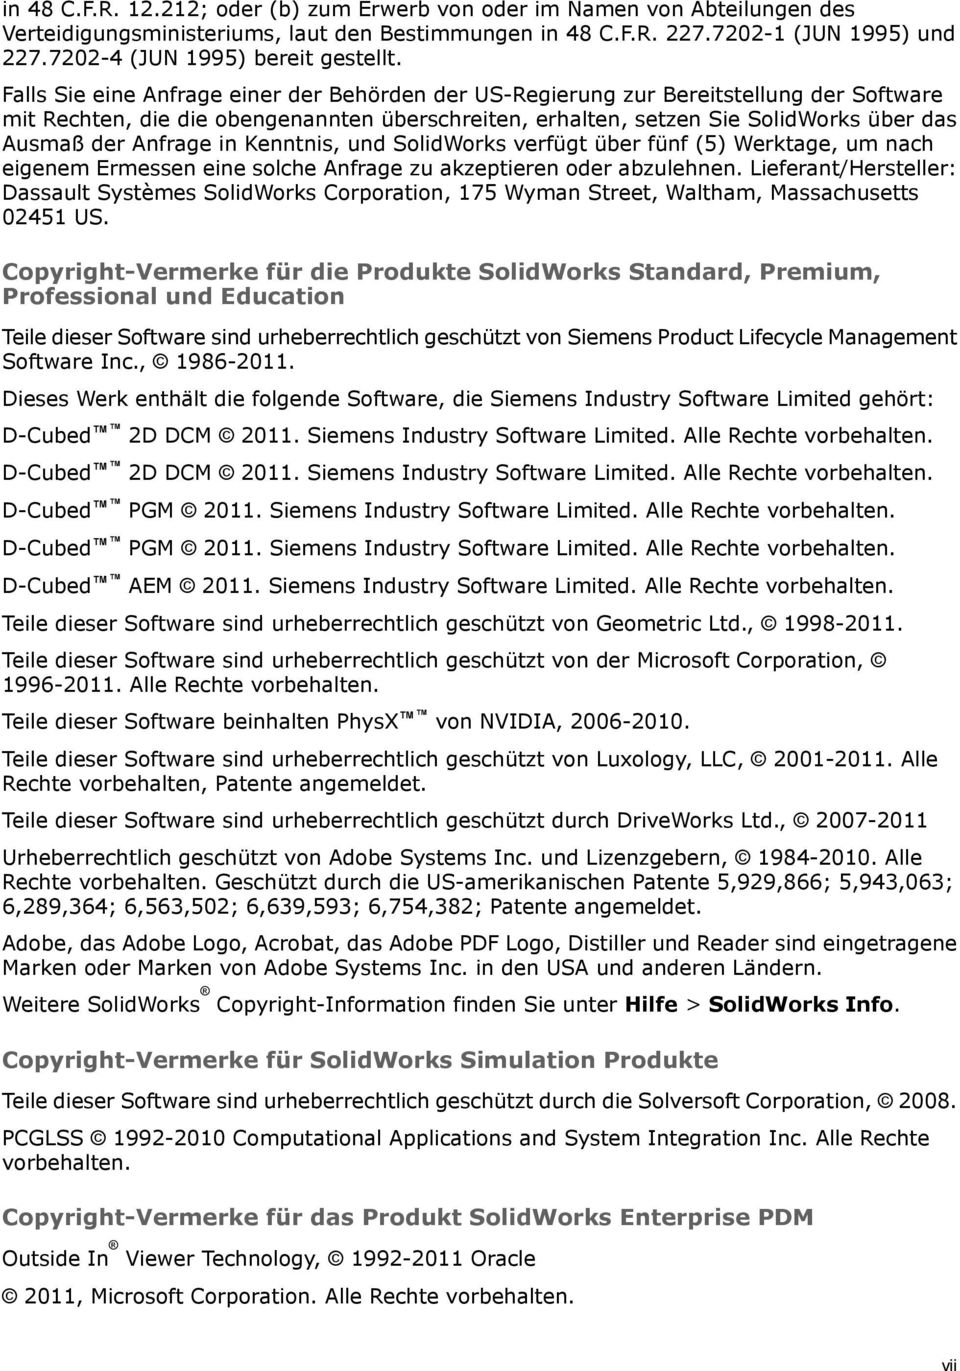 Falls Sie eine Anfrage einer der Behörden der US-Regierung zur Bereitstellung der Software mit Rechten, die die obengenannten überschreiten, erhalten, setzen Sie SolidWorks über das Ausmaß der